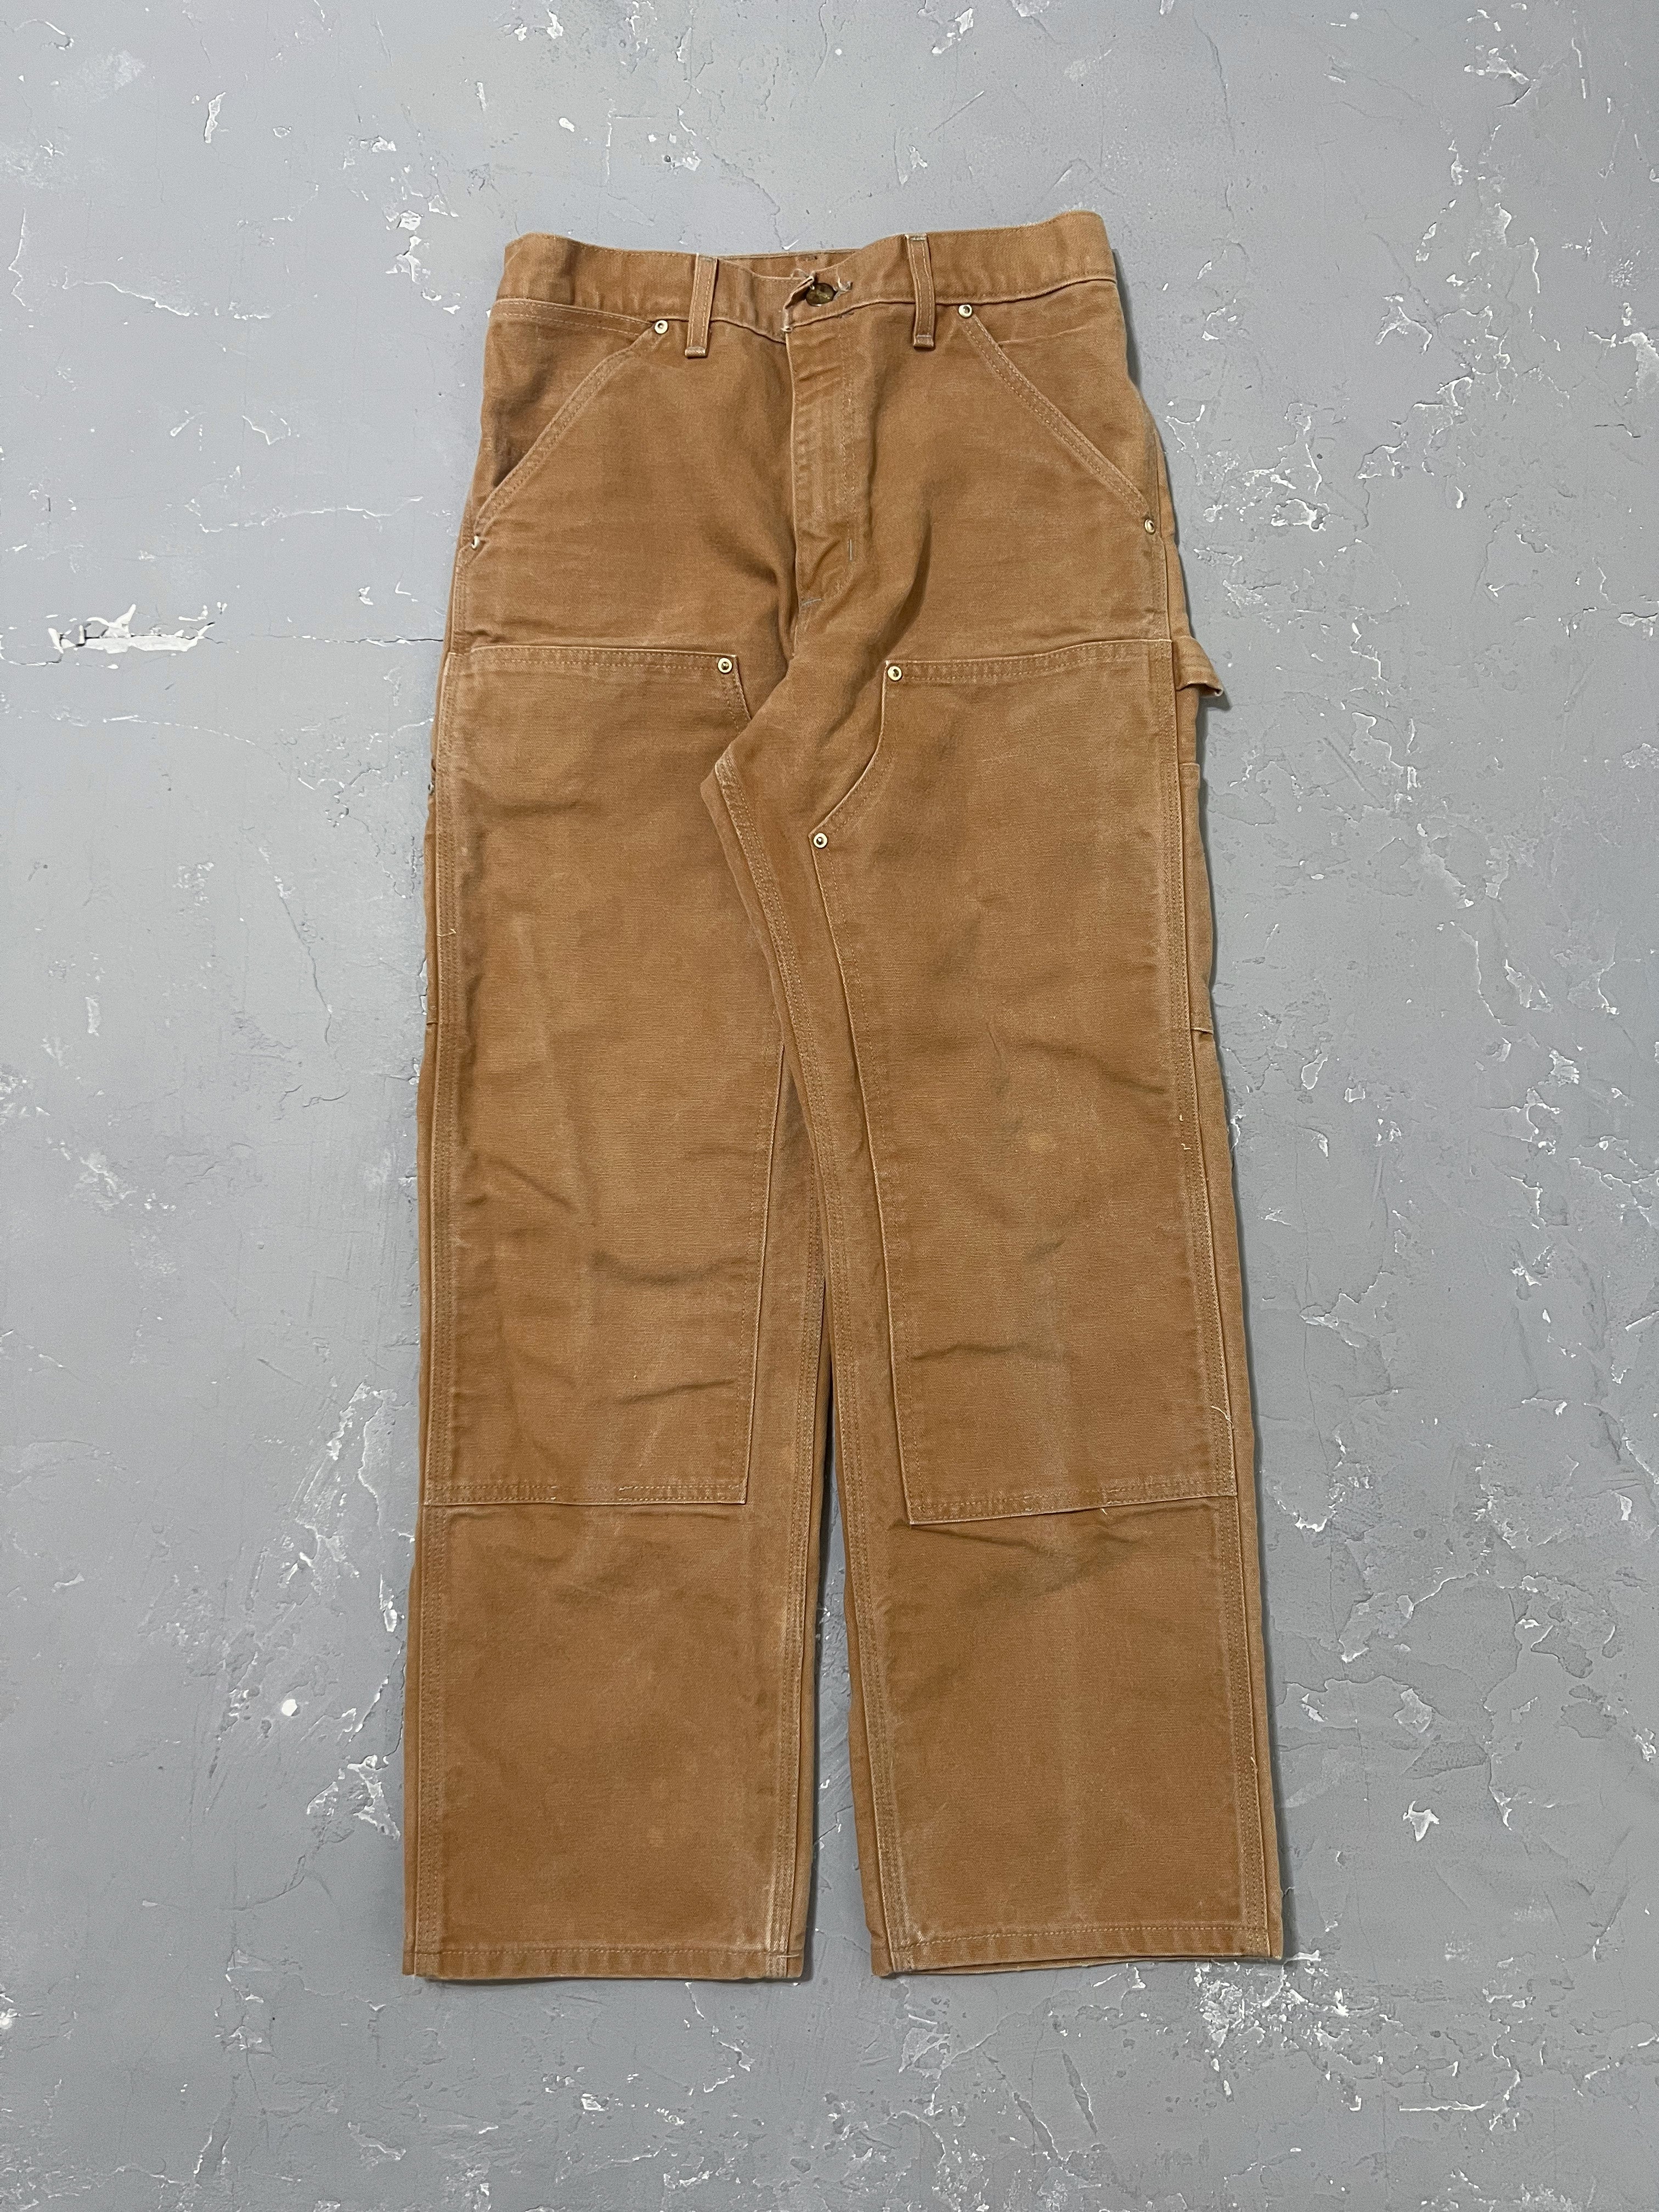 Vintage Carhartt Double Knee Work Pants